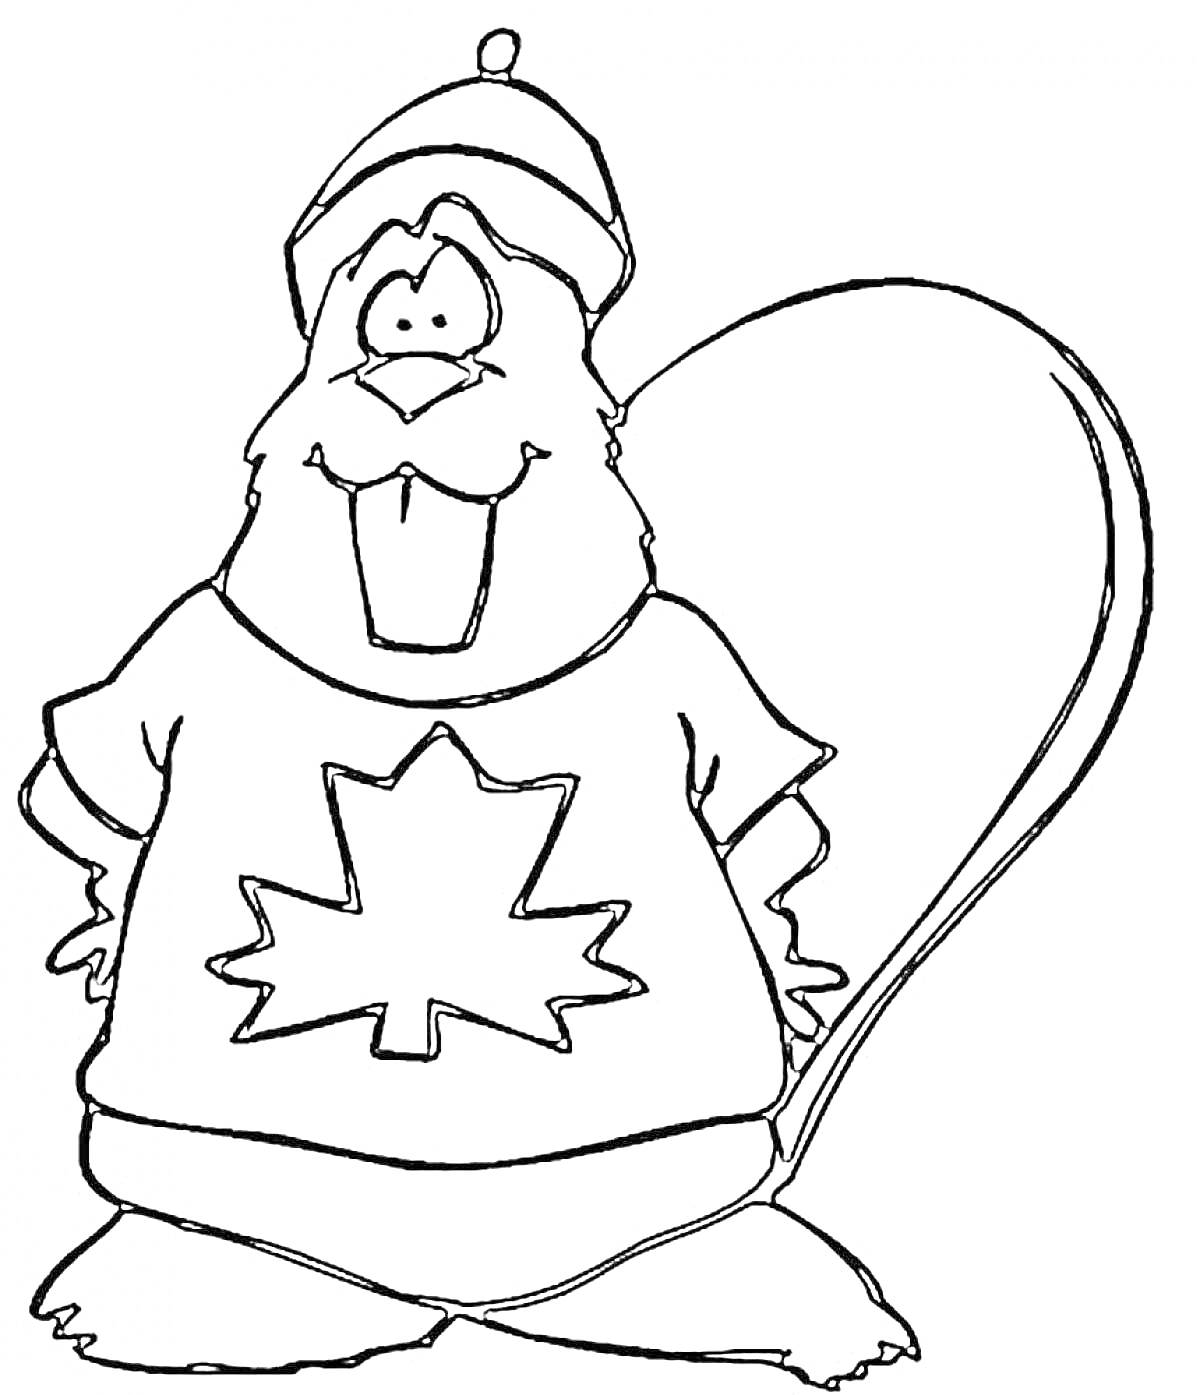 Бобр в шапке с канадским кленом на футболке